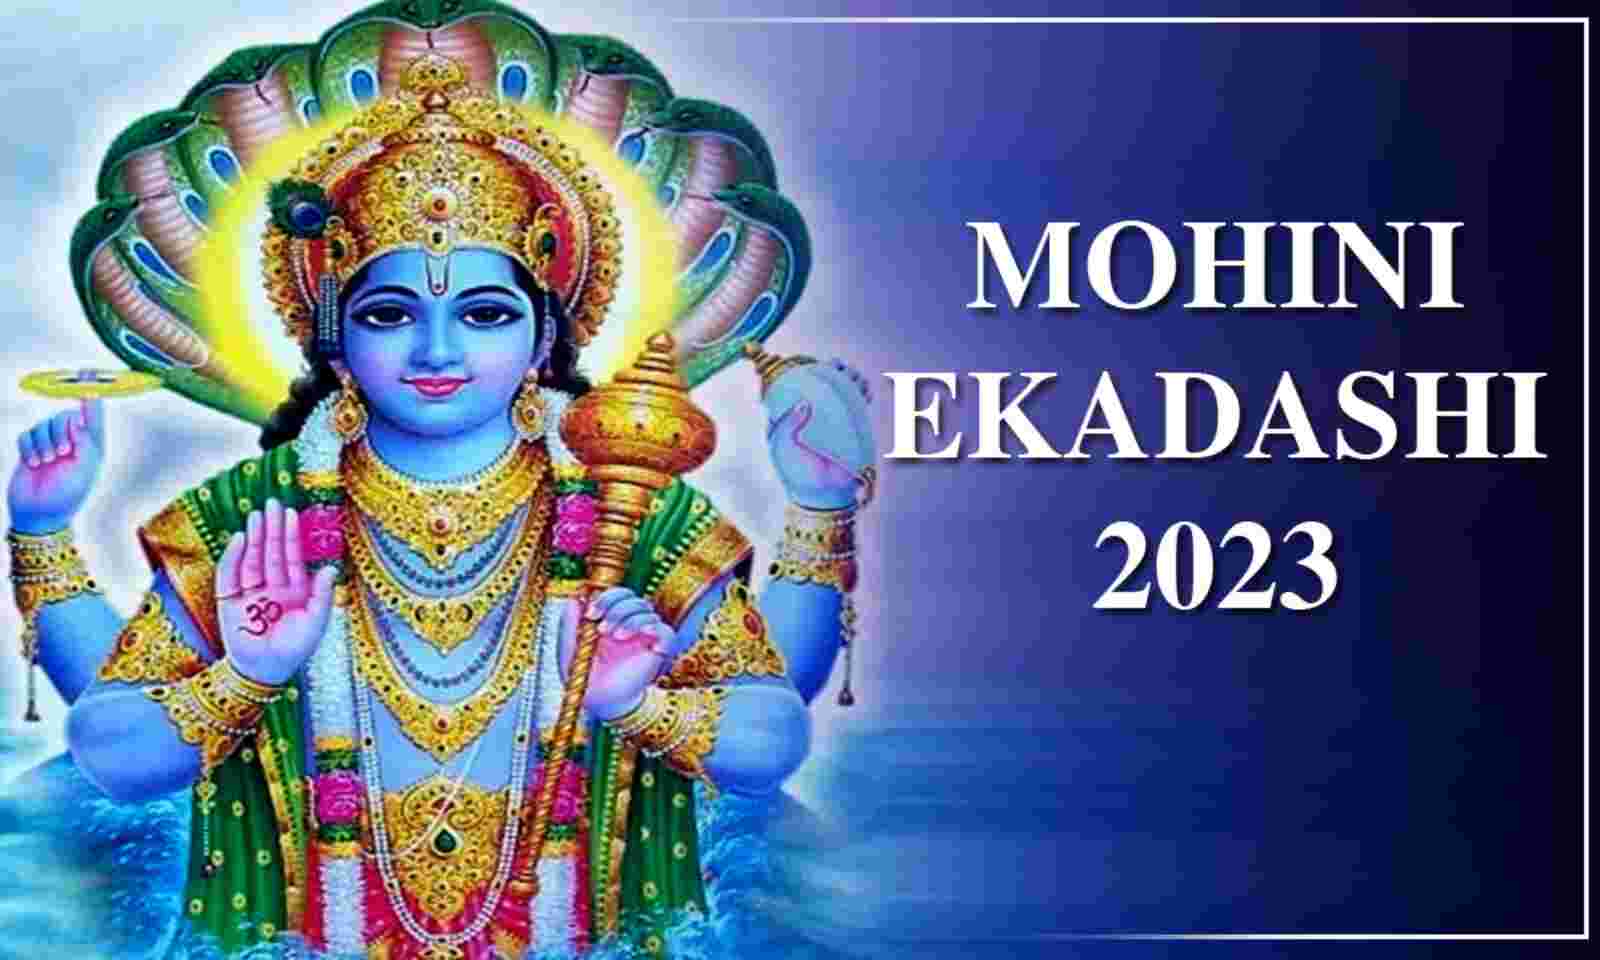 Mohini Ekadashi 2023